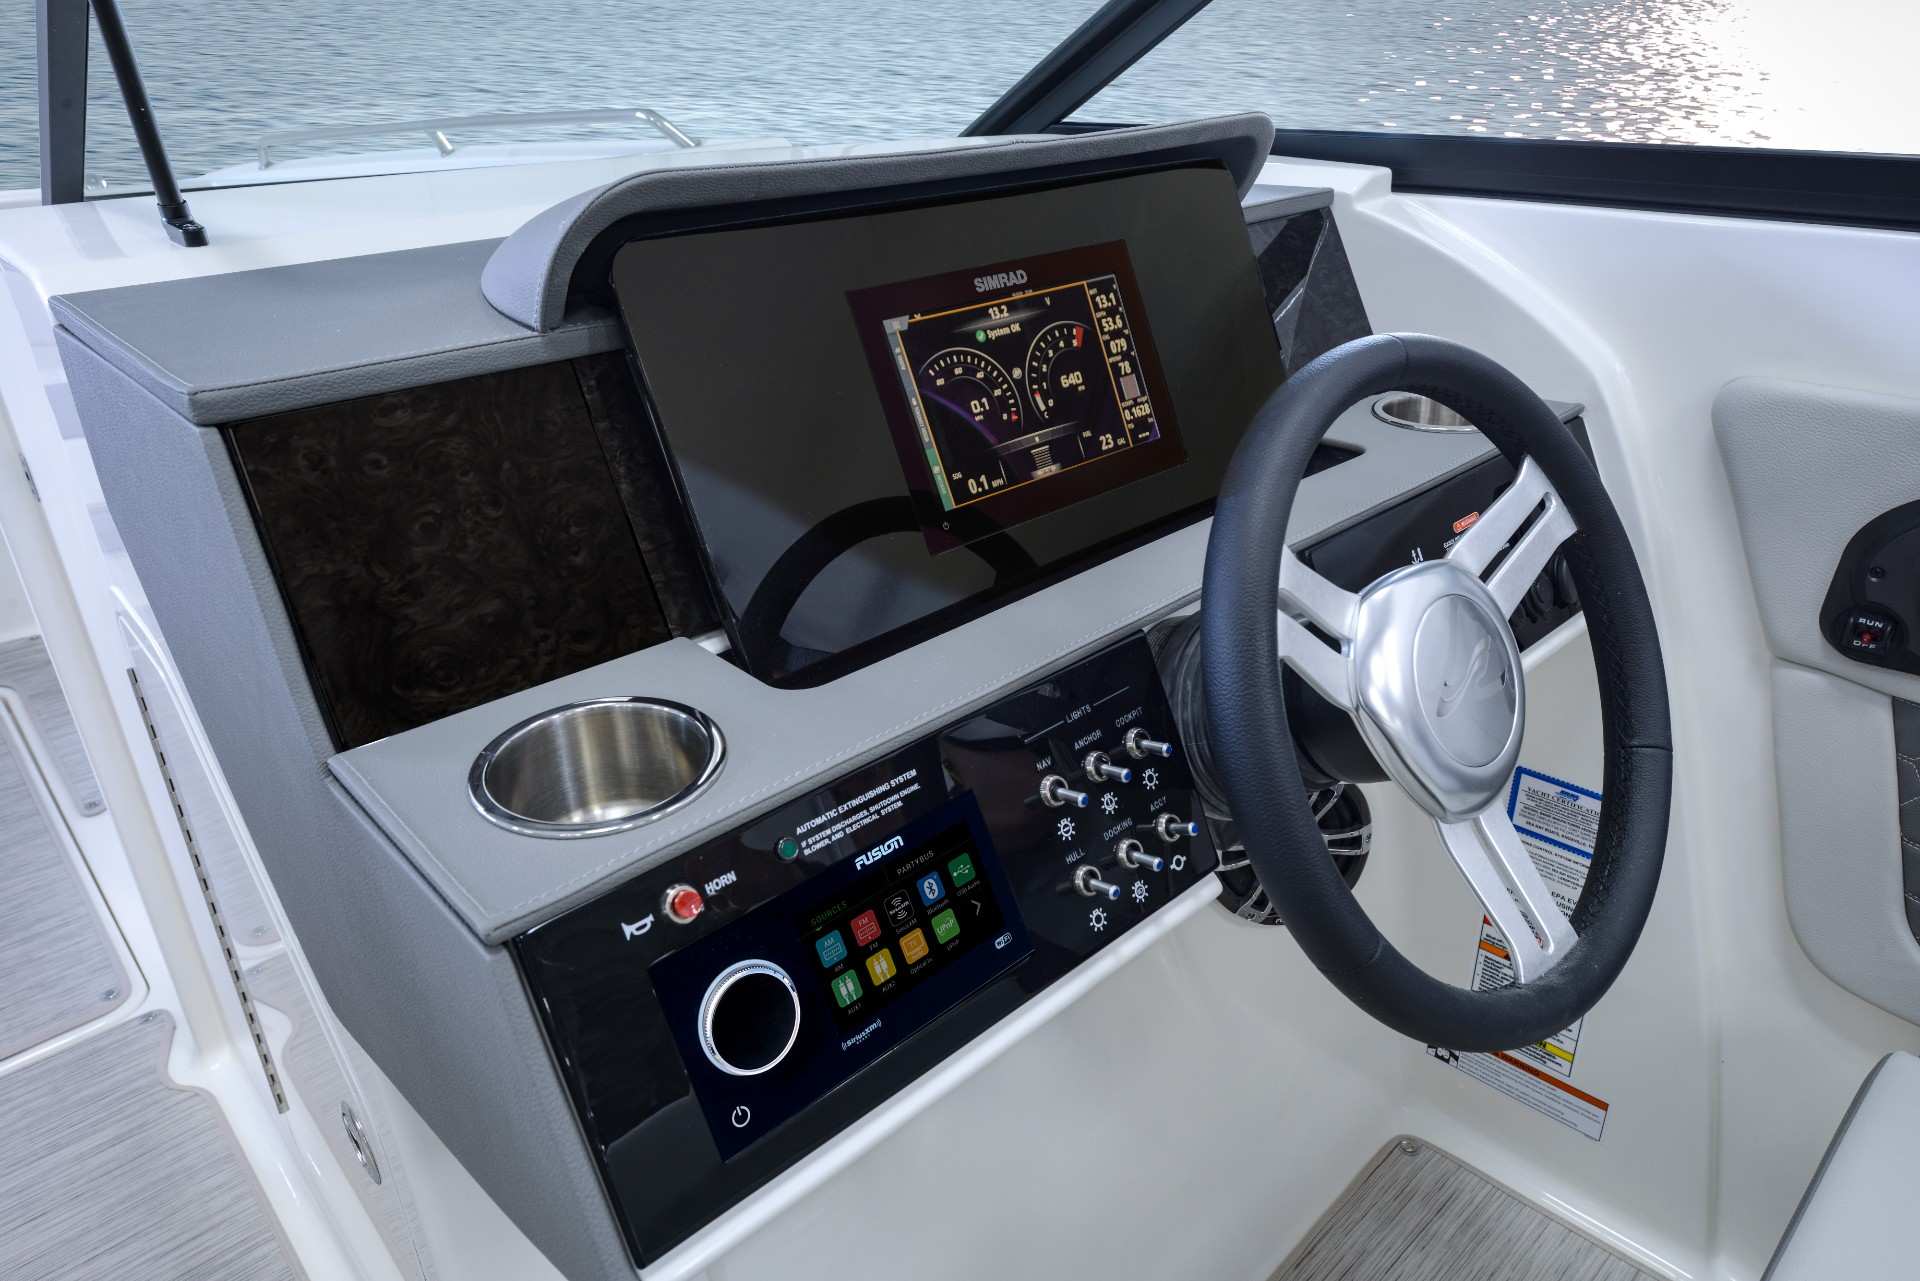 SDX 290 Outboard dash stone interior